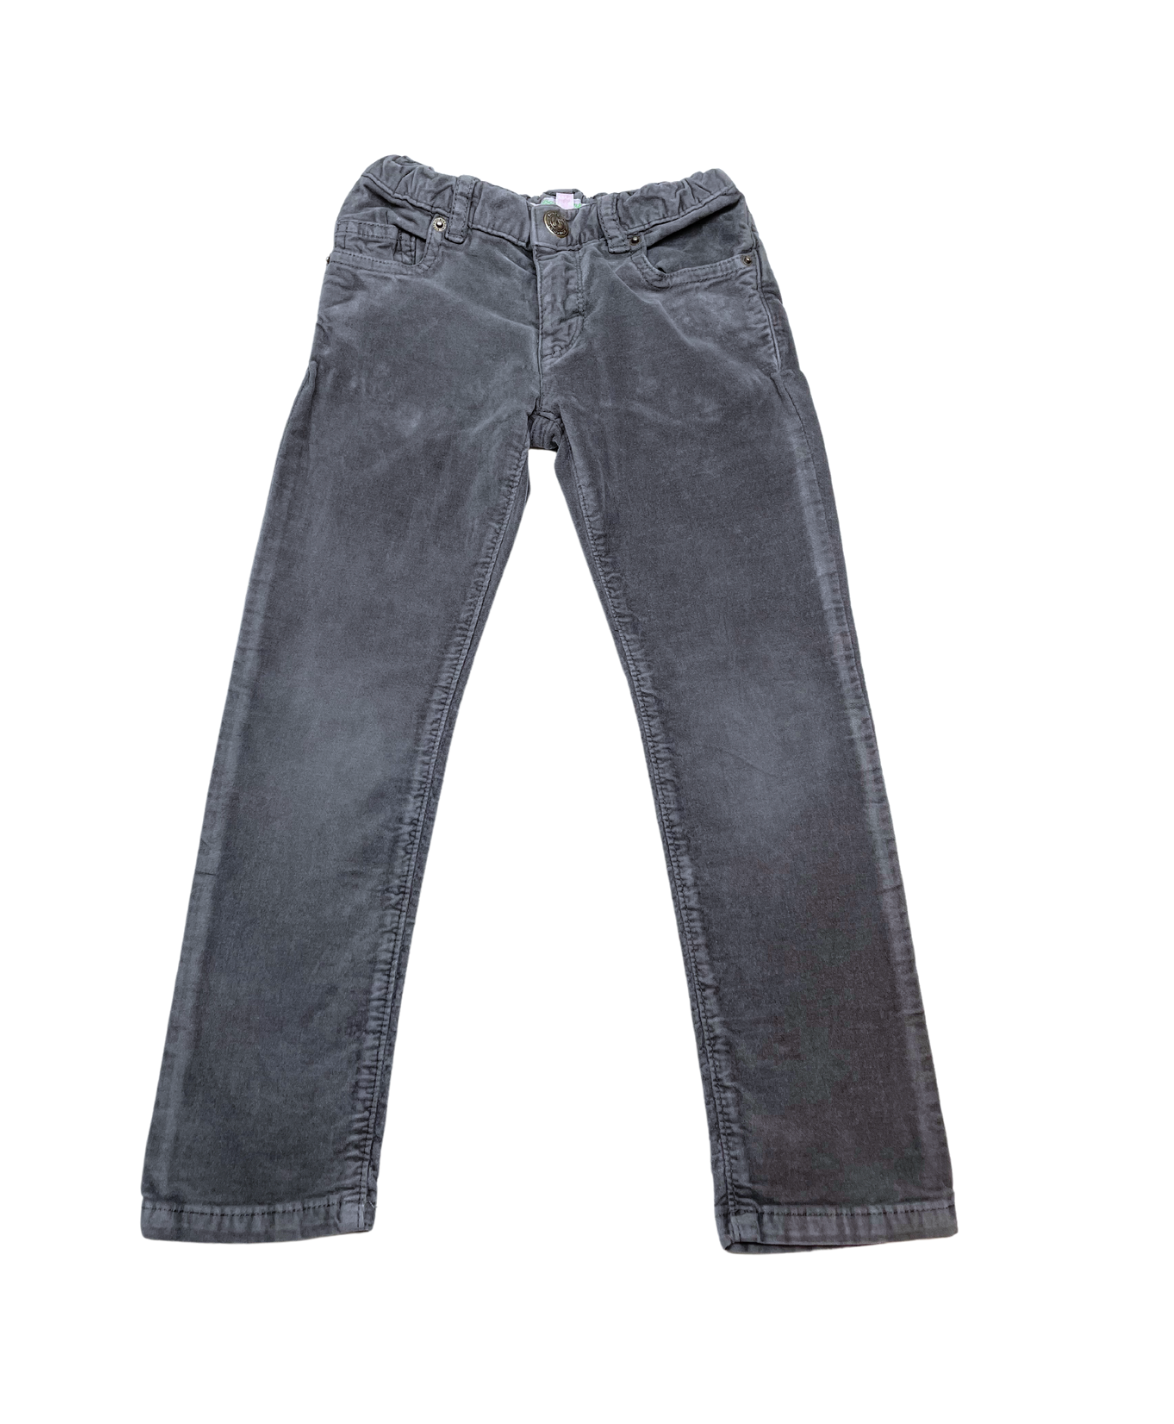 BONPOINT - Pantalon en velours gris foncé élastiqué - 4 ans